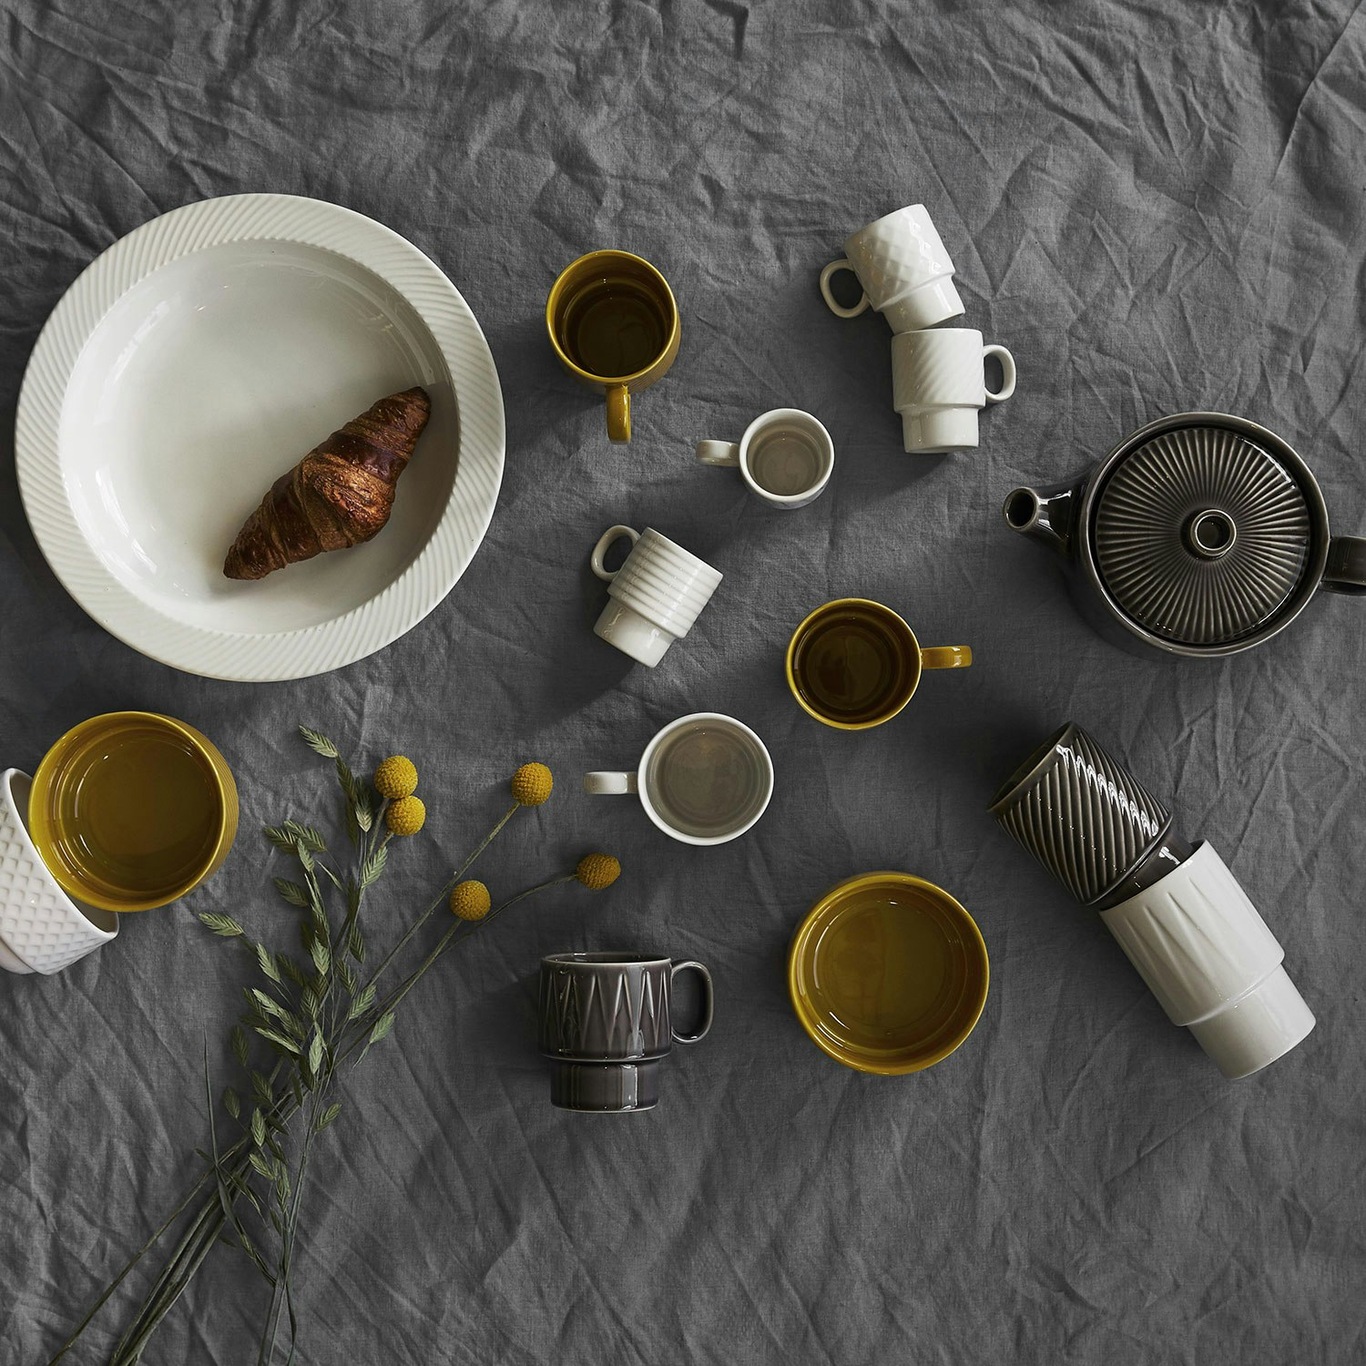 https://royaldesign.com/image/2/sagaform-coffee-more-espresso-mug-4-pcs-1?w=800&quality=80